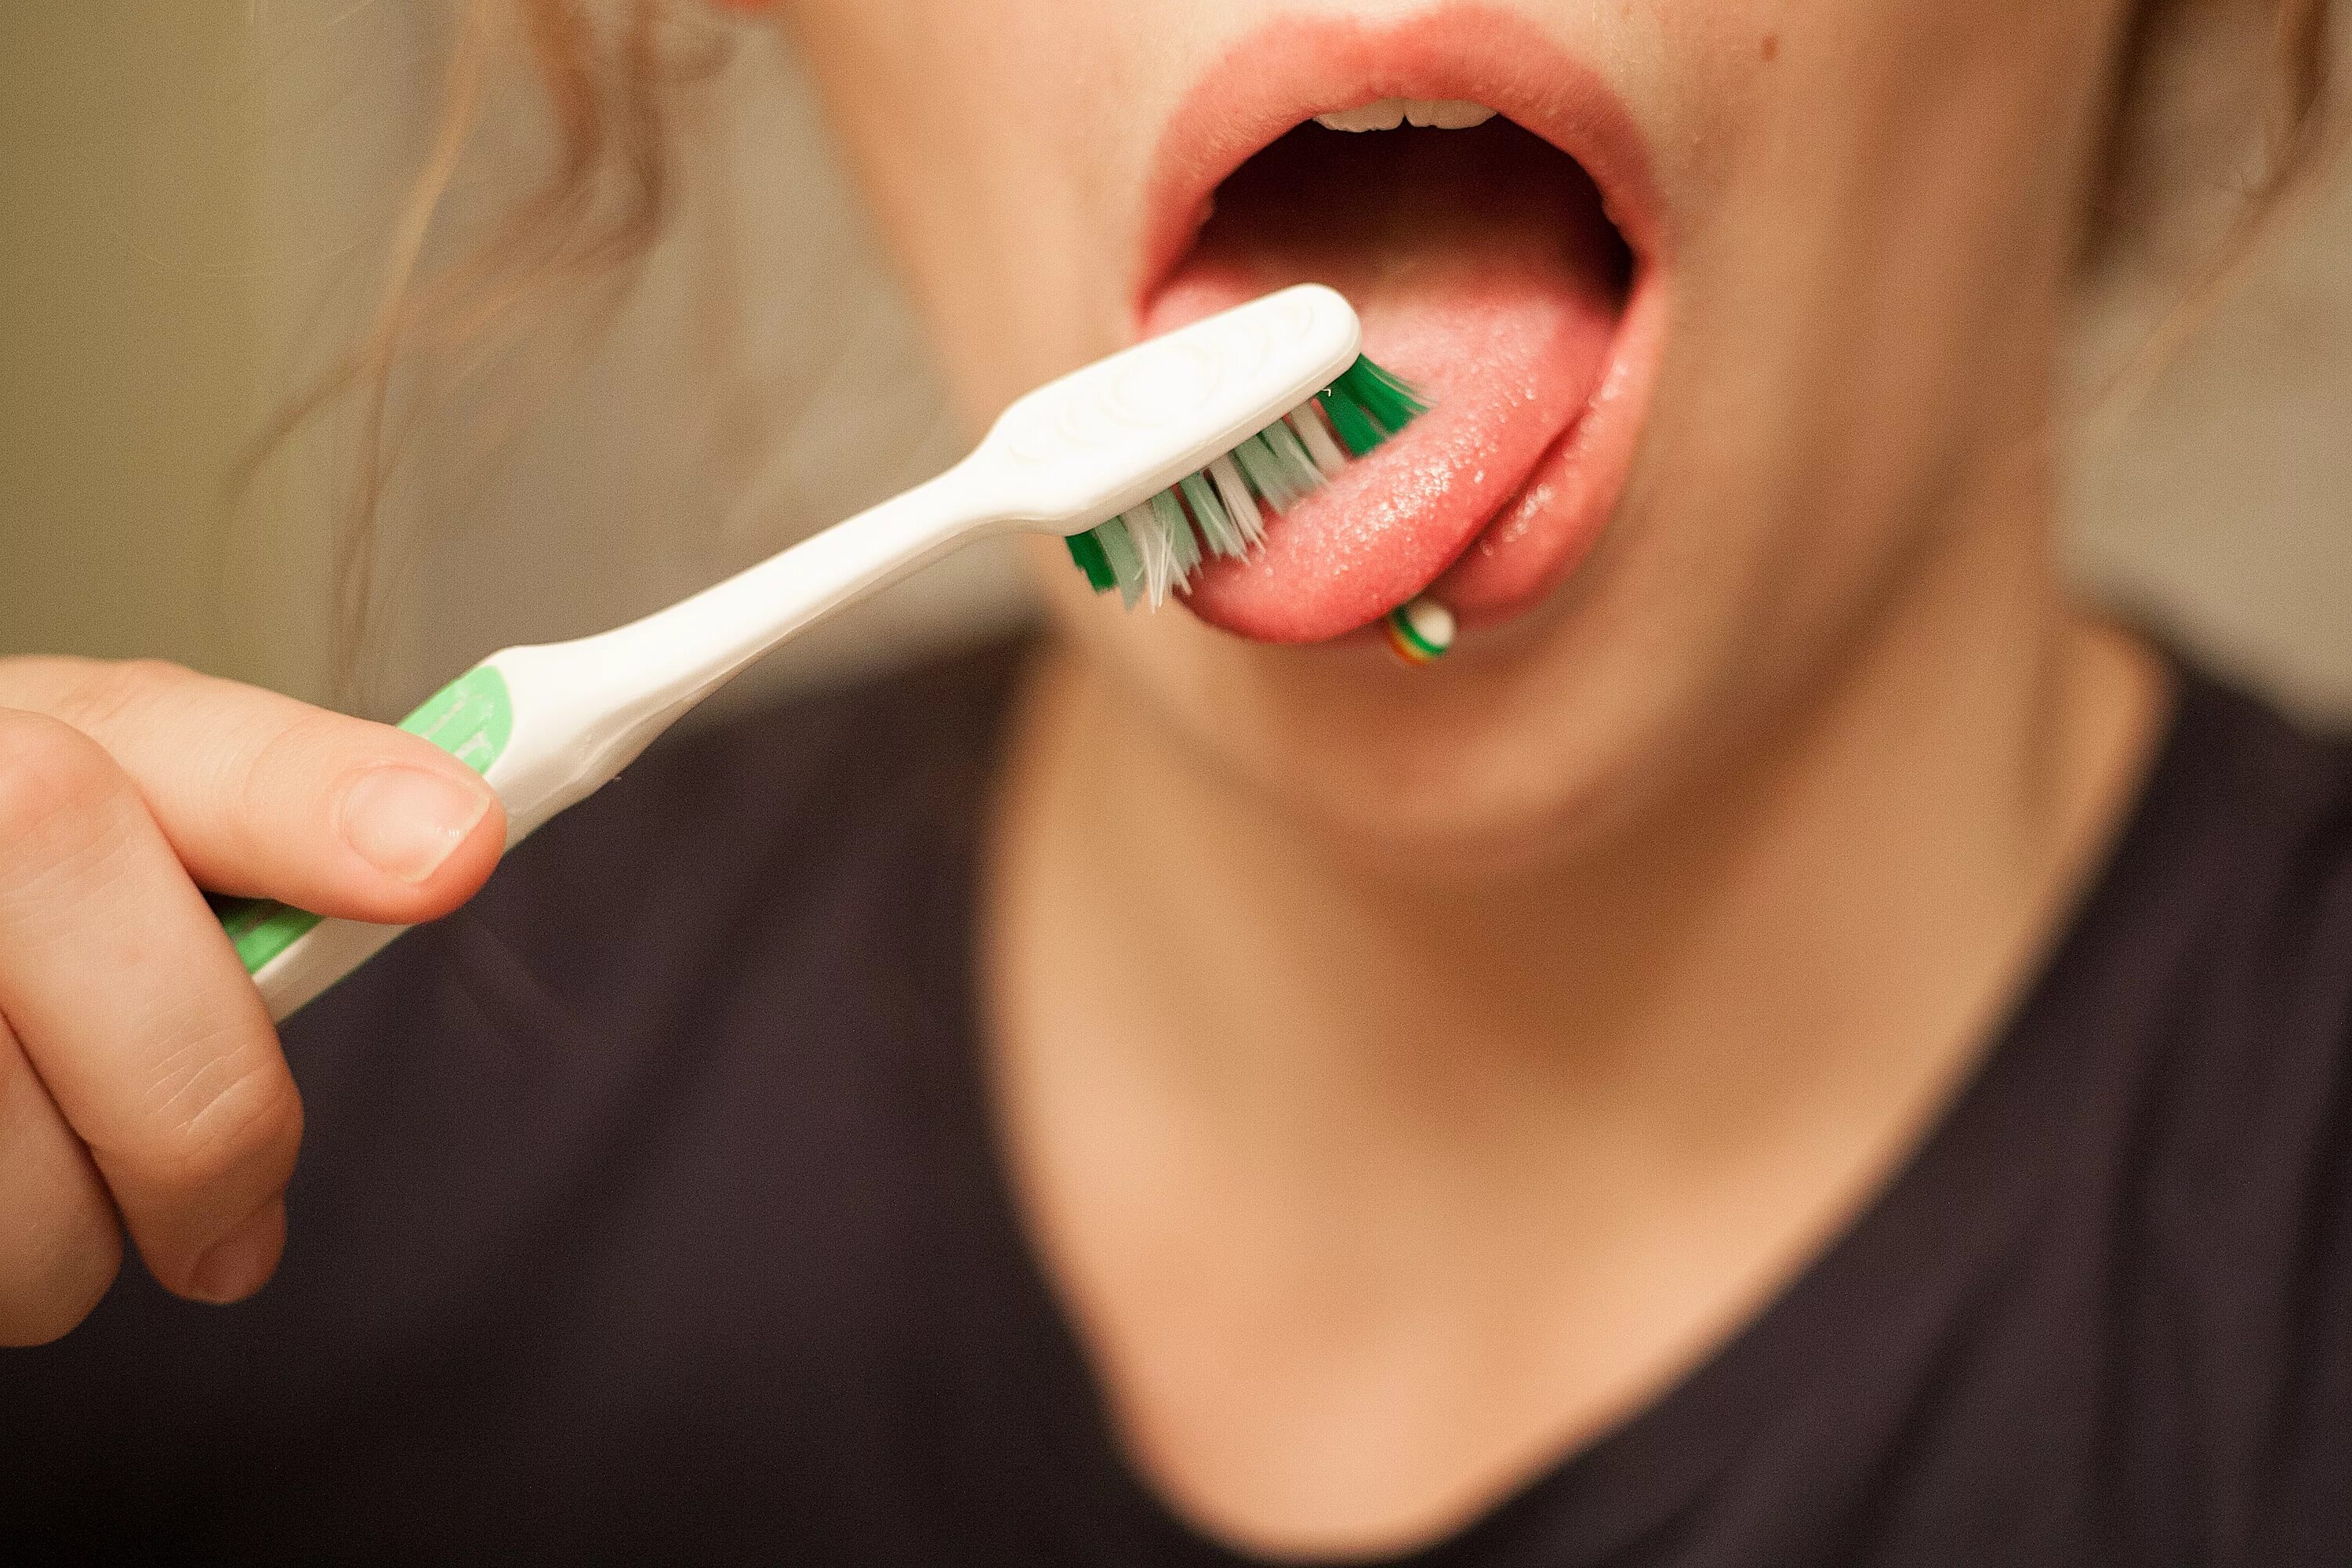 Споласкивать рот после. Чистка языка зубной щеткой. Зубные щётки для чистки зубов и языка. Чистка зубов зубной щеткой.